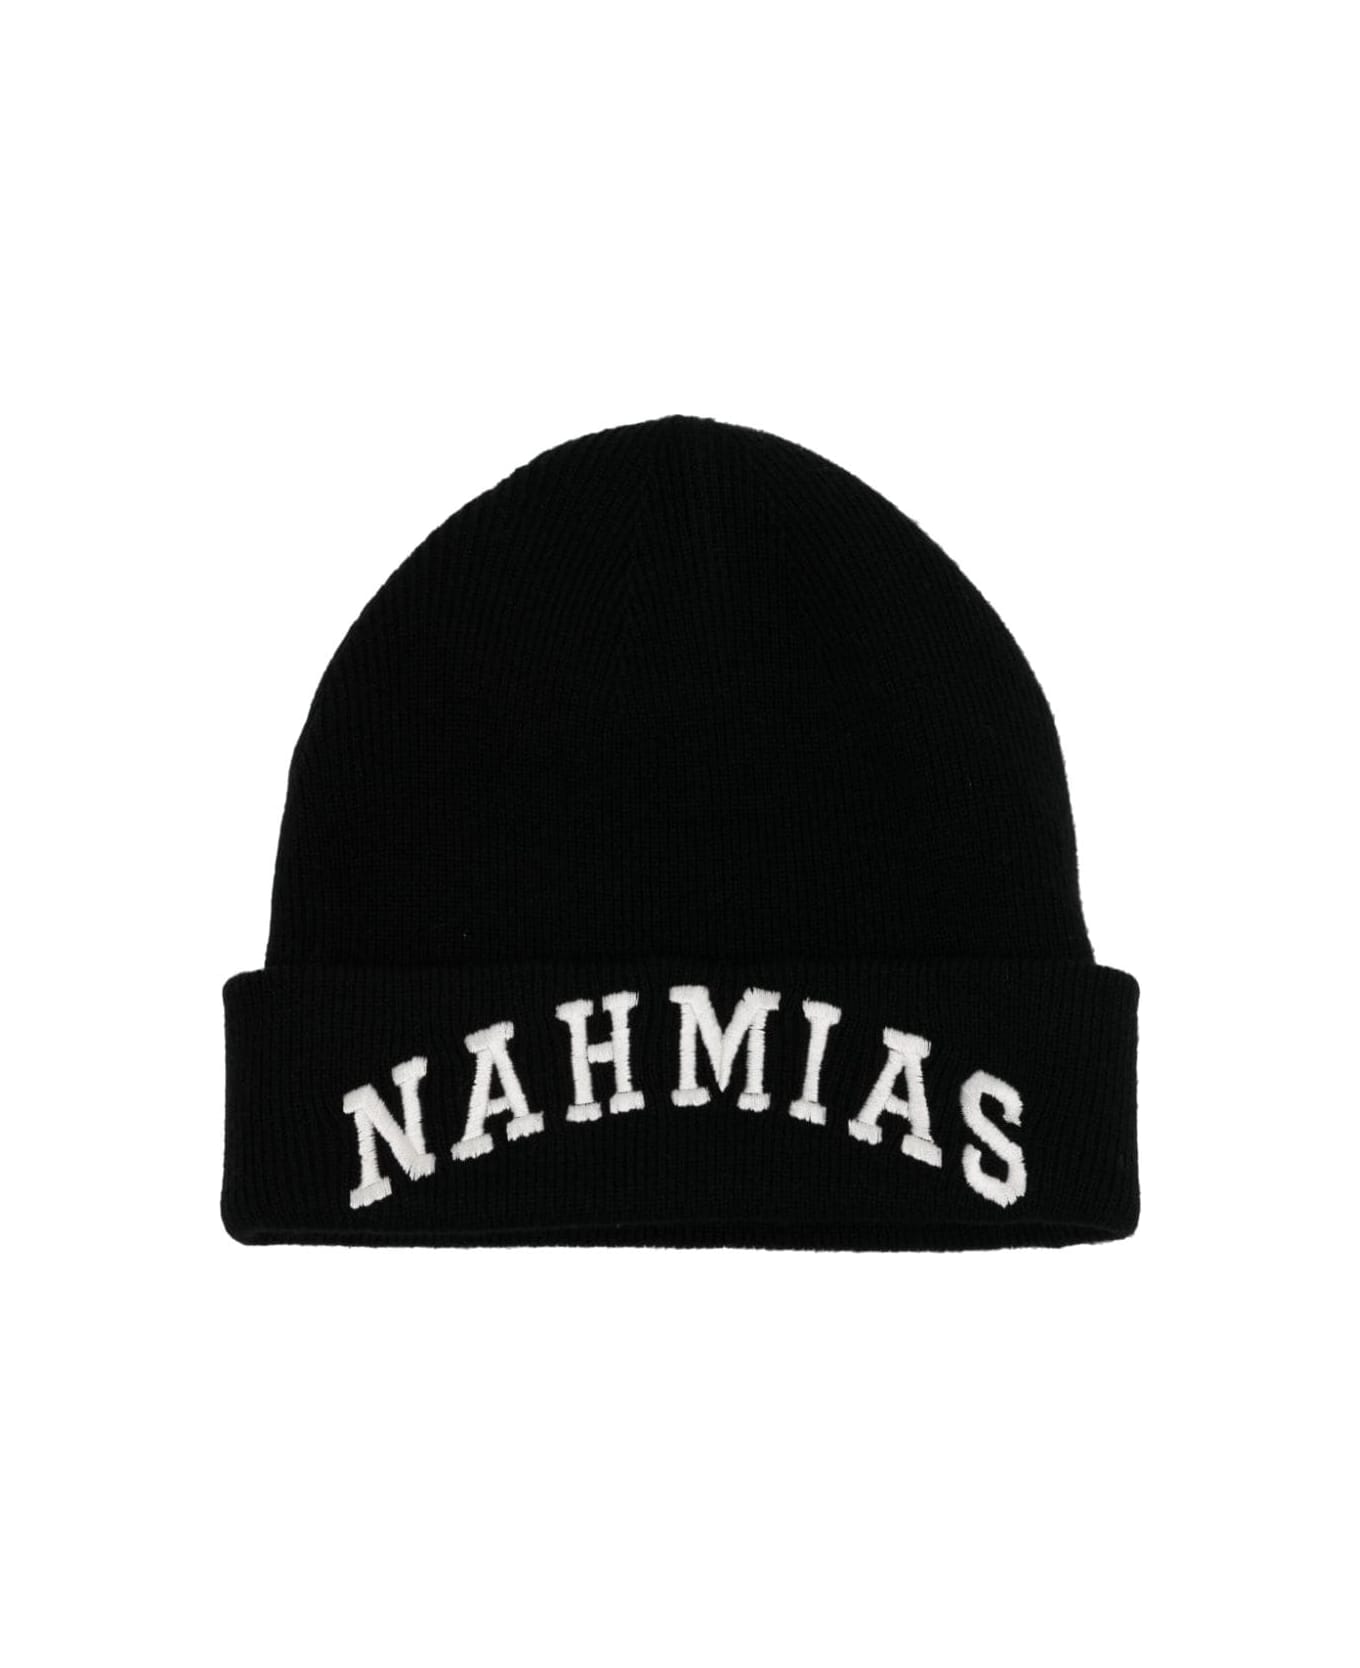 Nahmias Beanie - Black 帽子